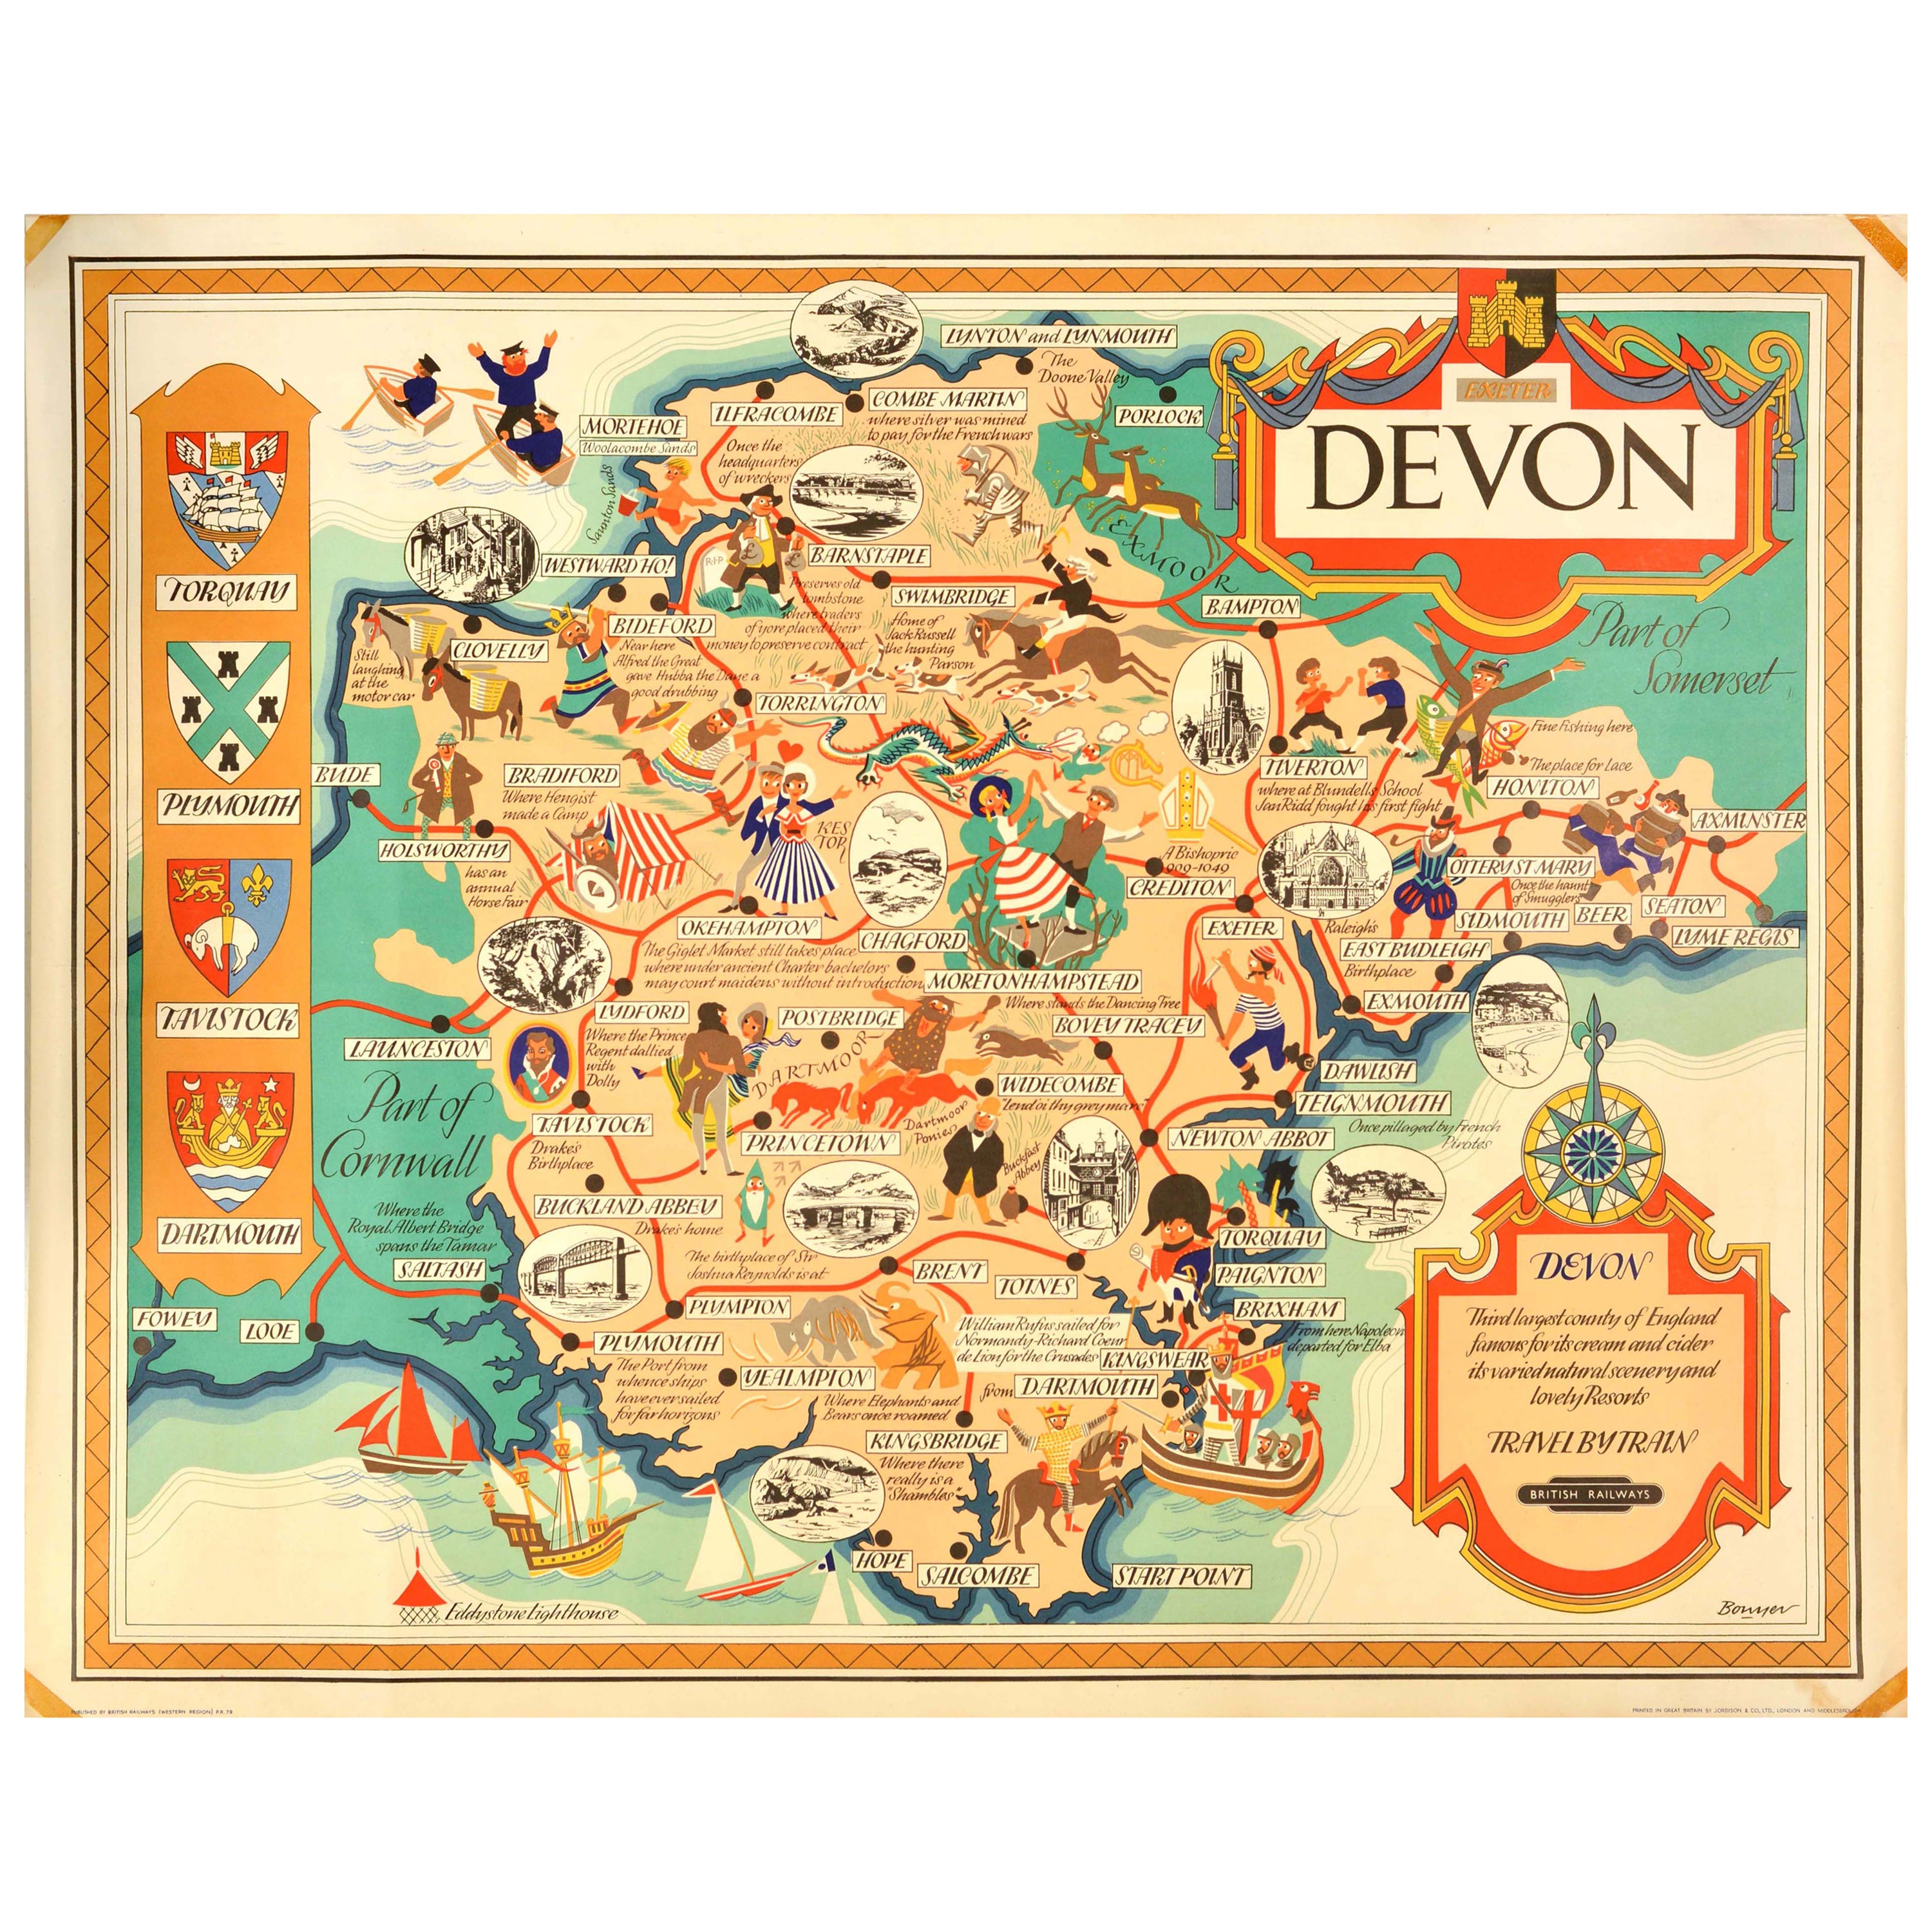 Original Vintage British Railways Train Travel Poster Devon Pictorial Map UK For Sale